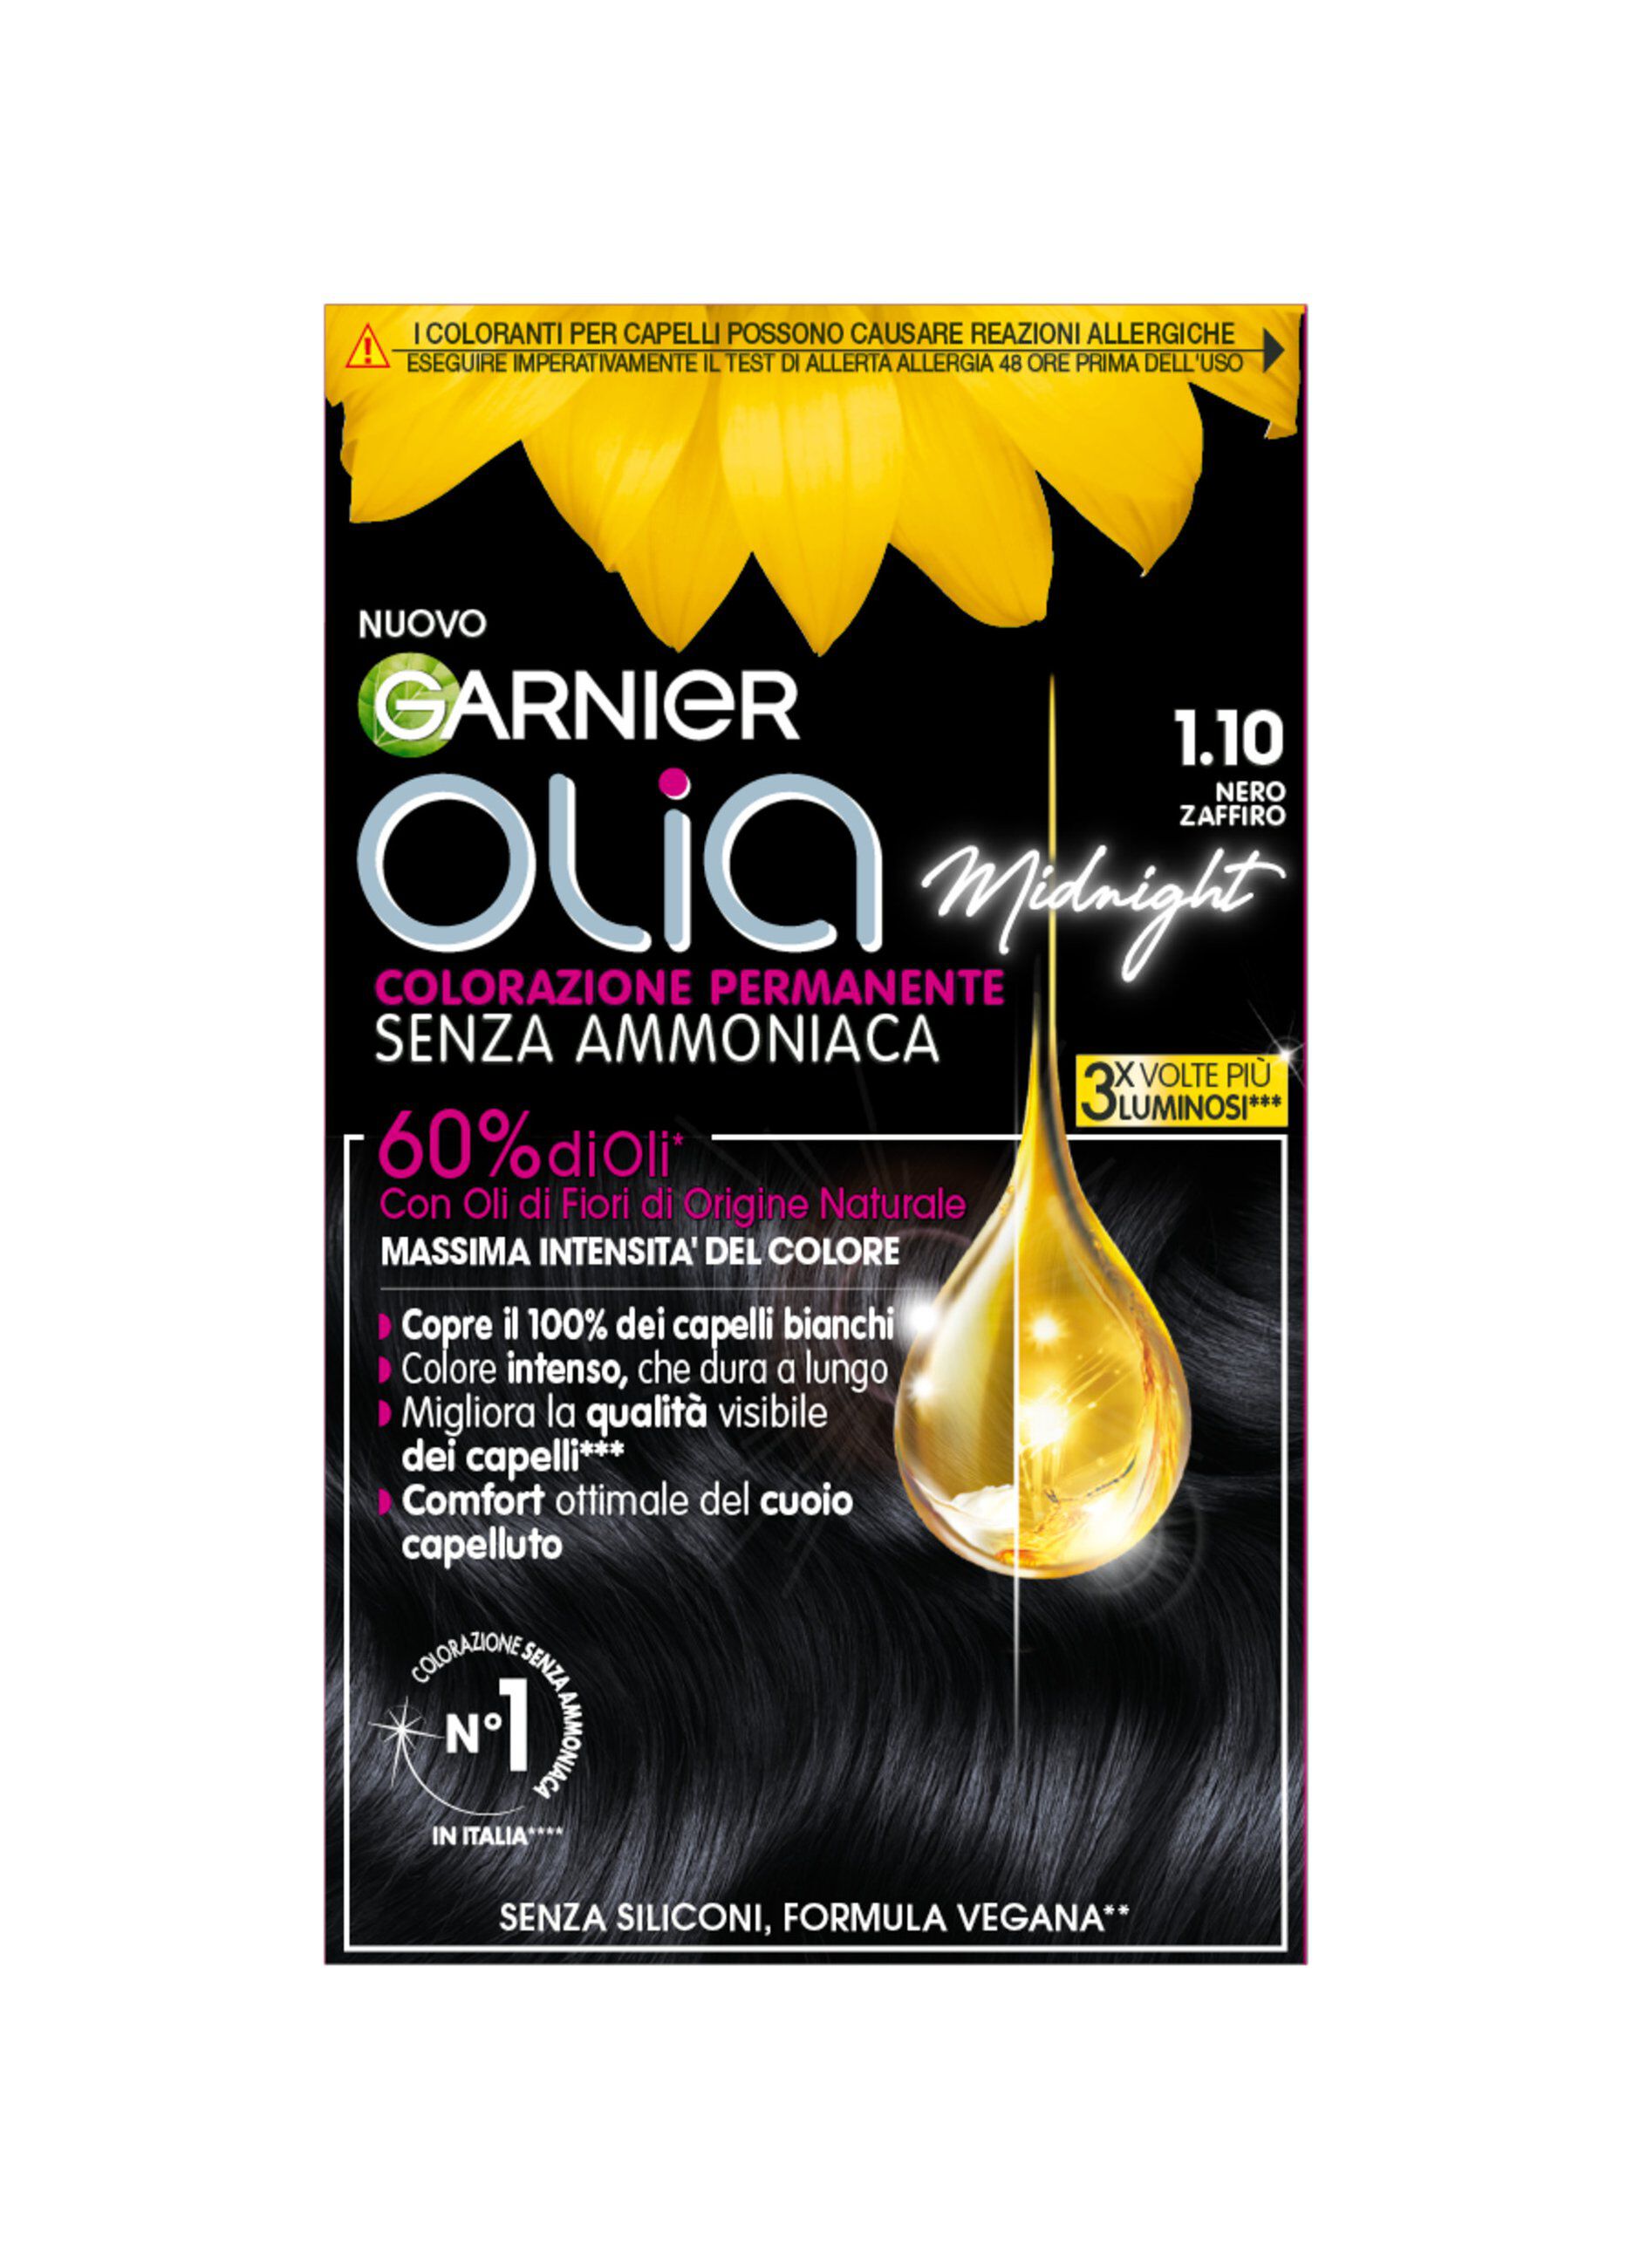 Garnier Tinta Capelli Olia, Colorazione permanente senza ammoniaca, copre il 100% dei capelli bianchi, Con oli di fiori di origine naturale, Nero Zaffiro (1.10).